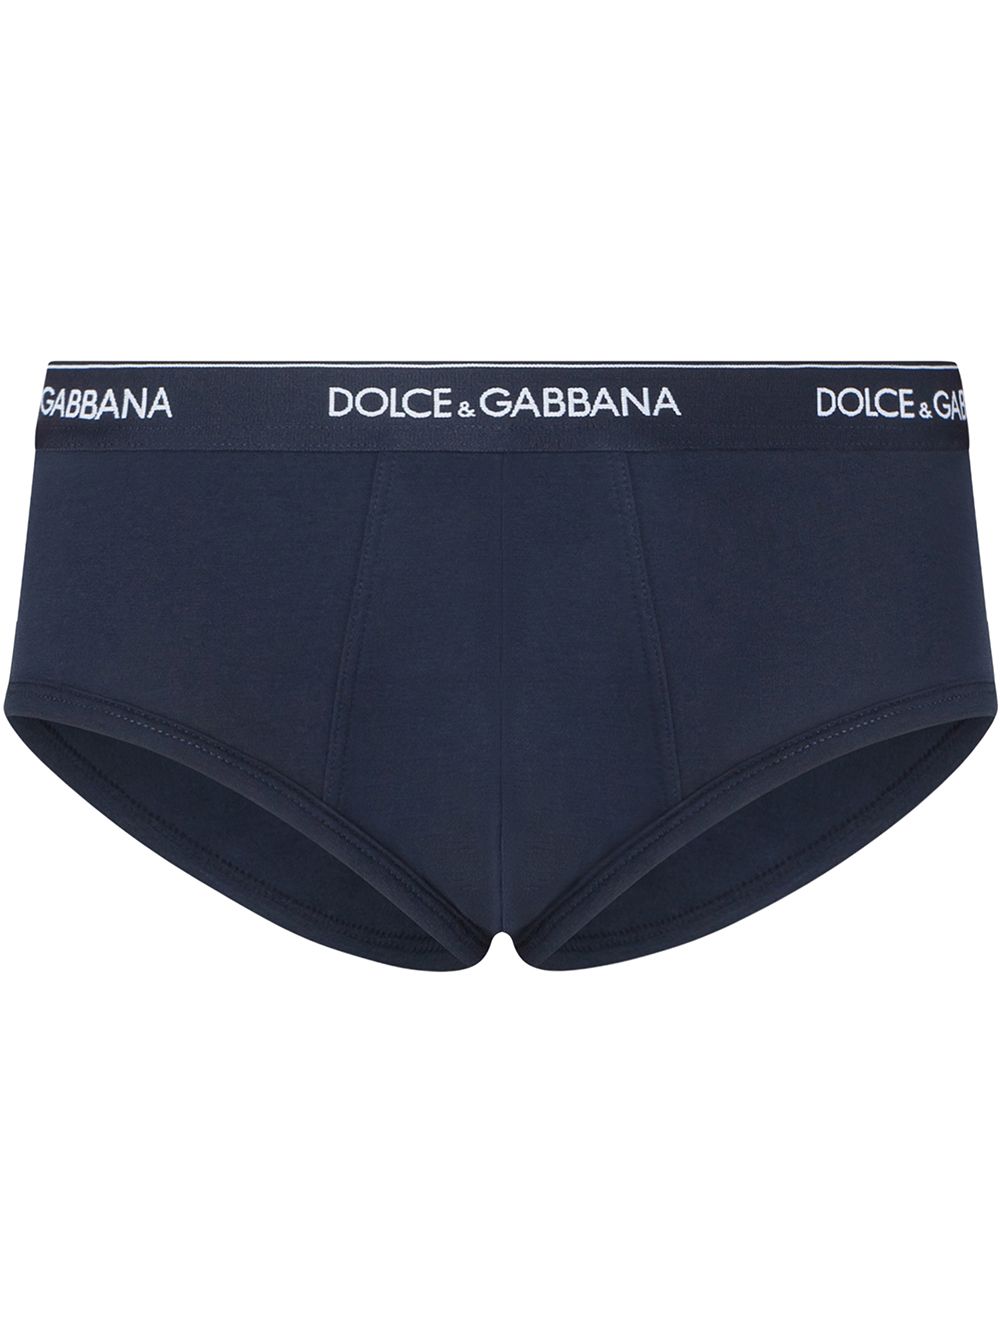 Dolce & Gabbana Klassischer Slip mit Logo - Blau von Dolce & Gabbana